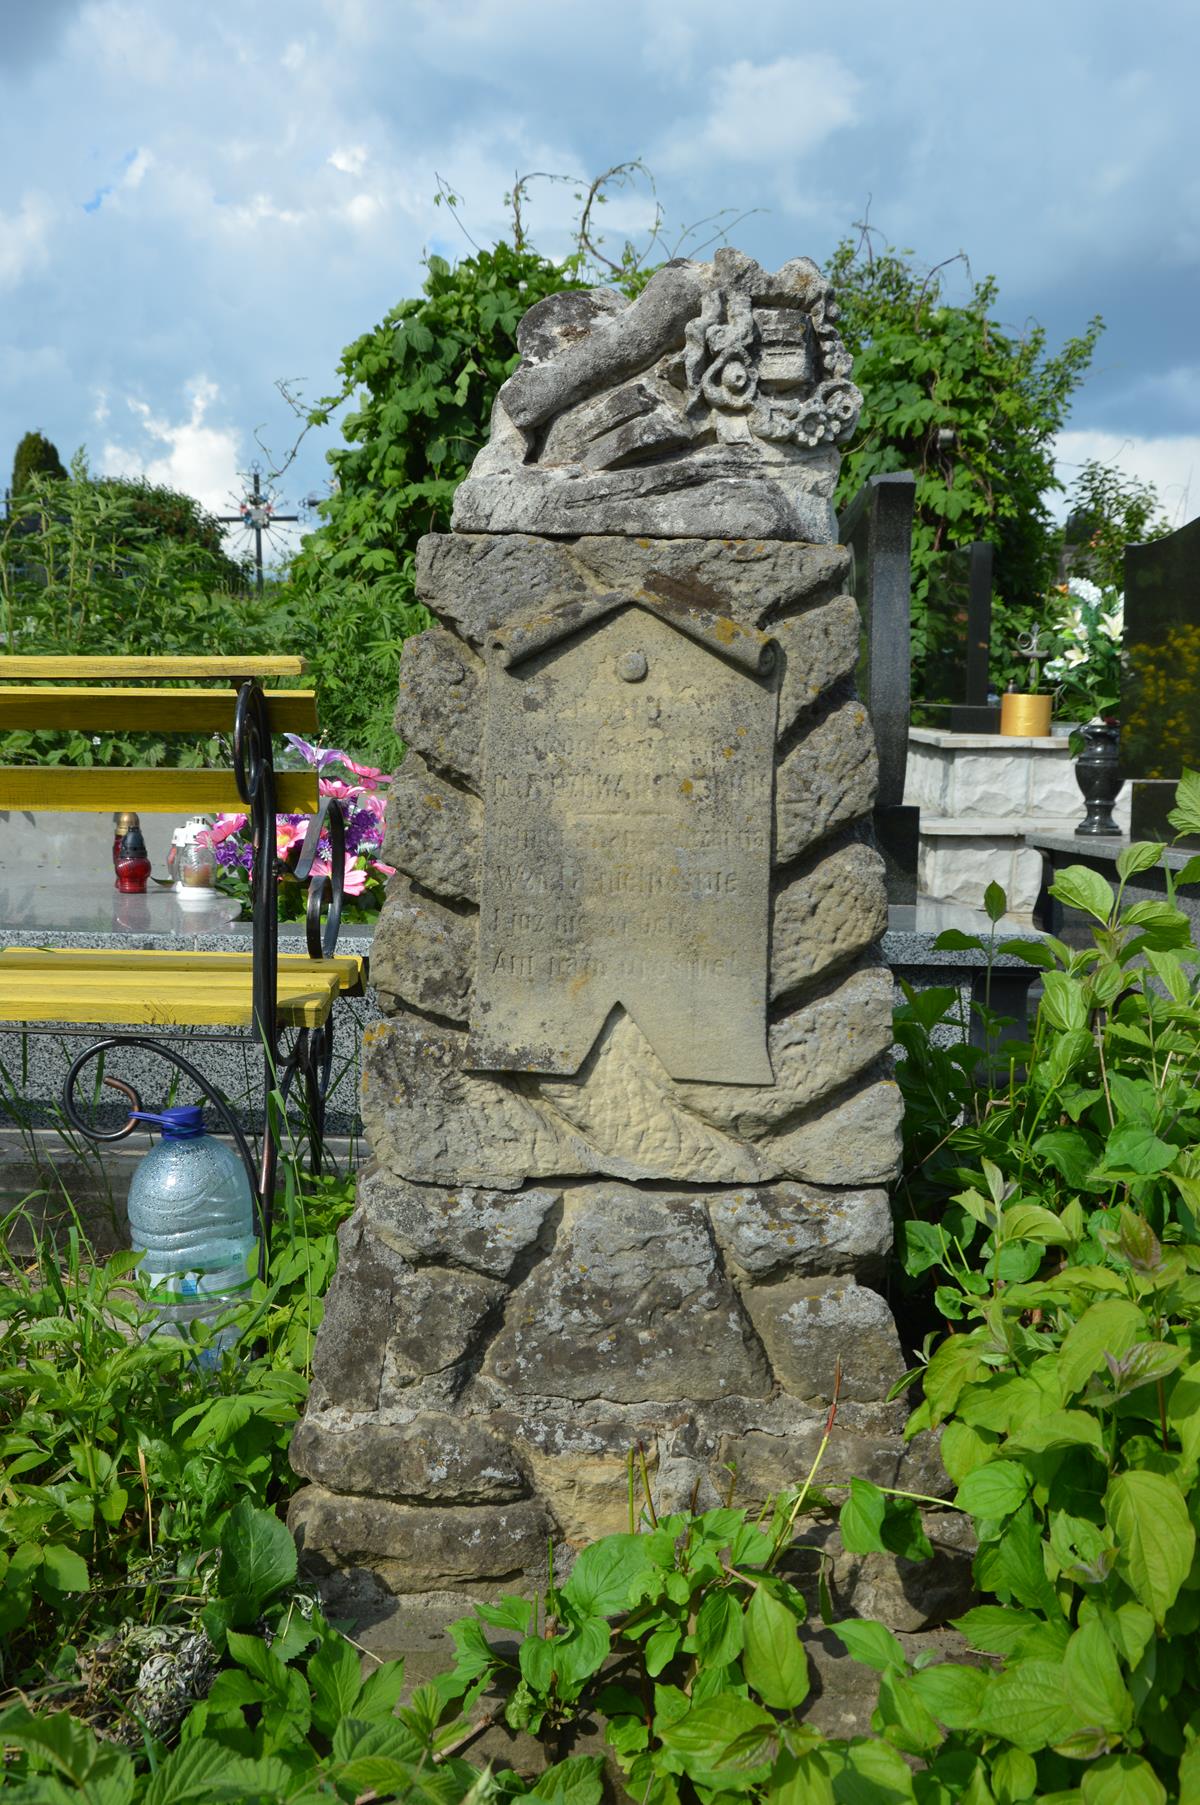 Nagrobek Romana Czekaniowskiego, cmentarz w Tarnopolu, stan przed 2016